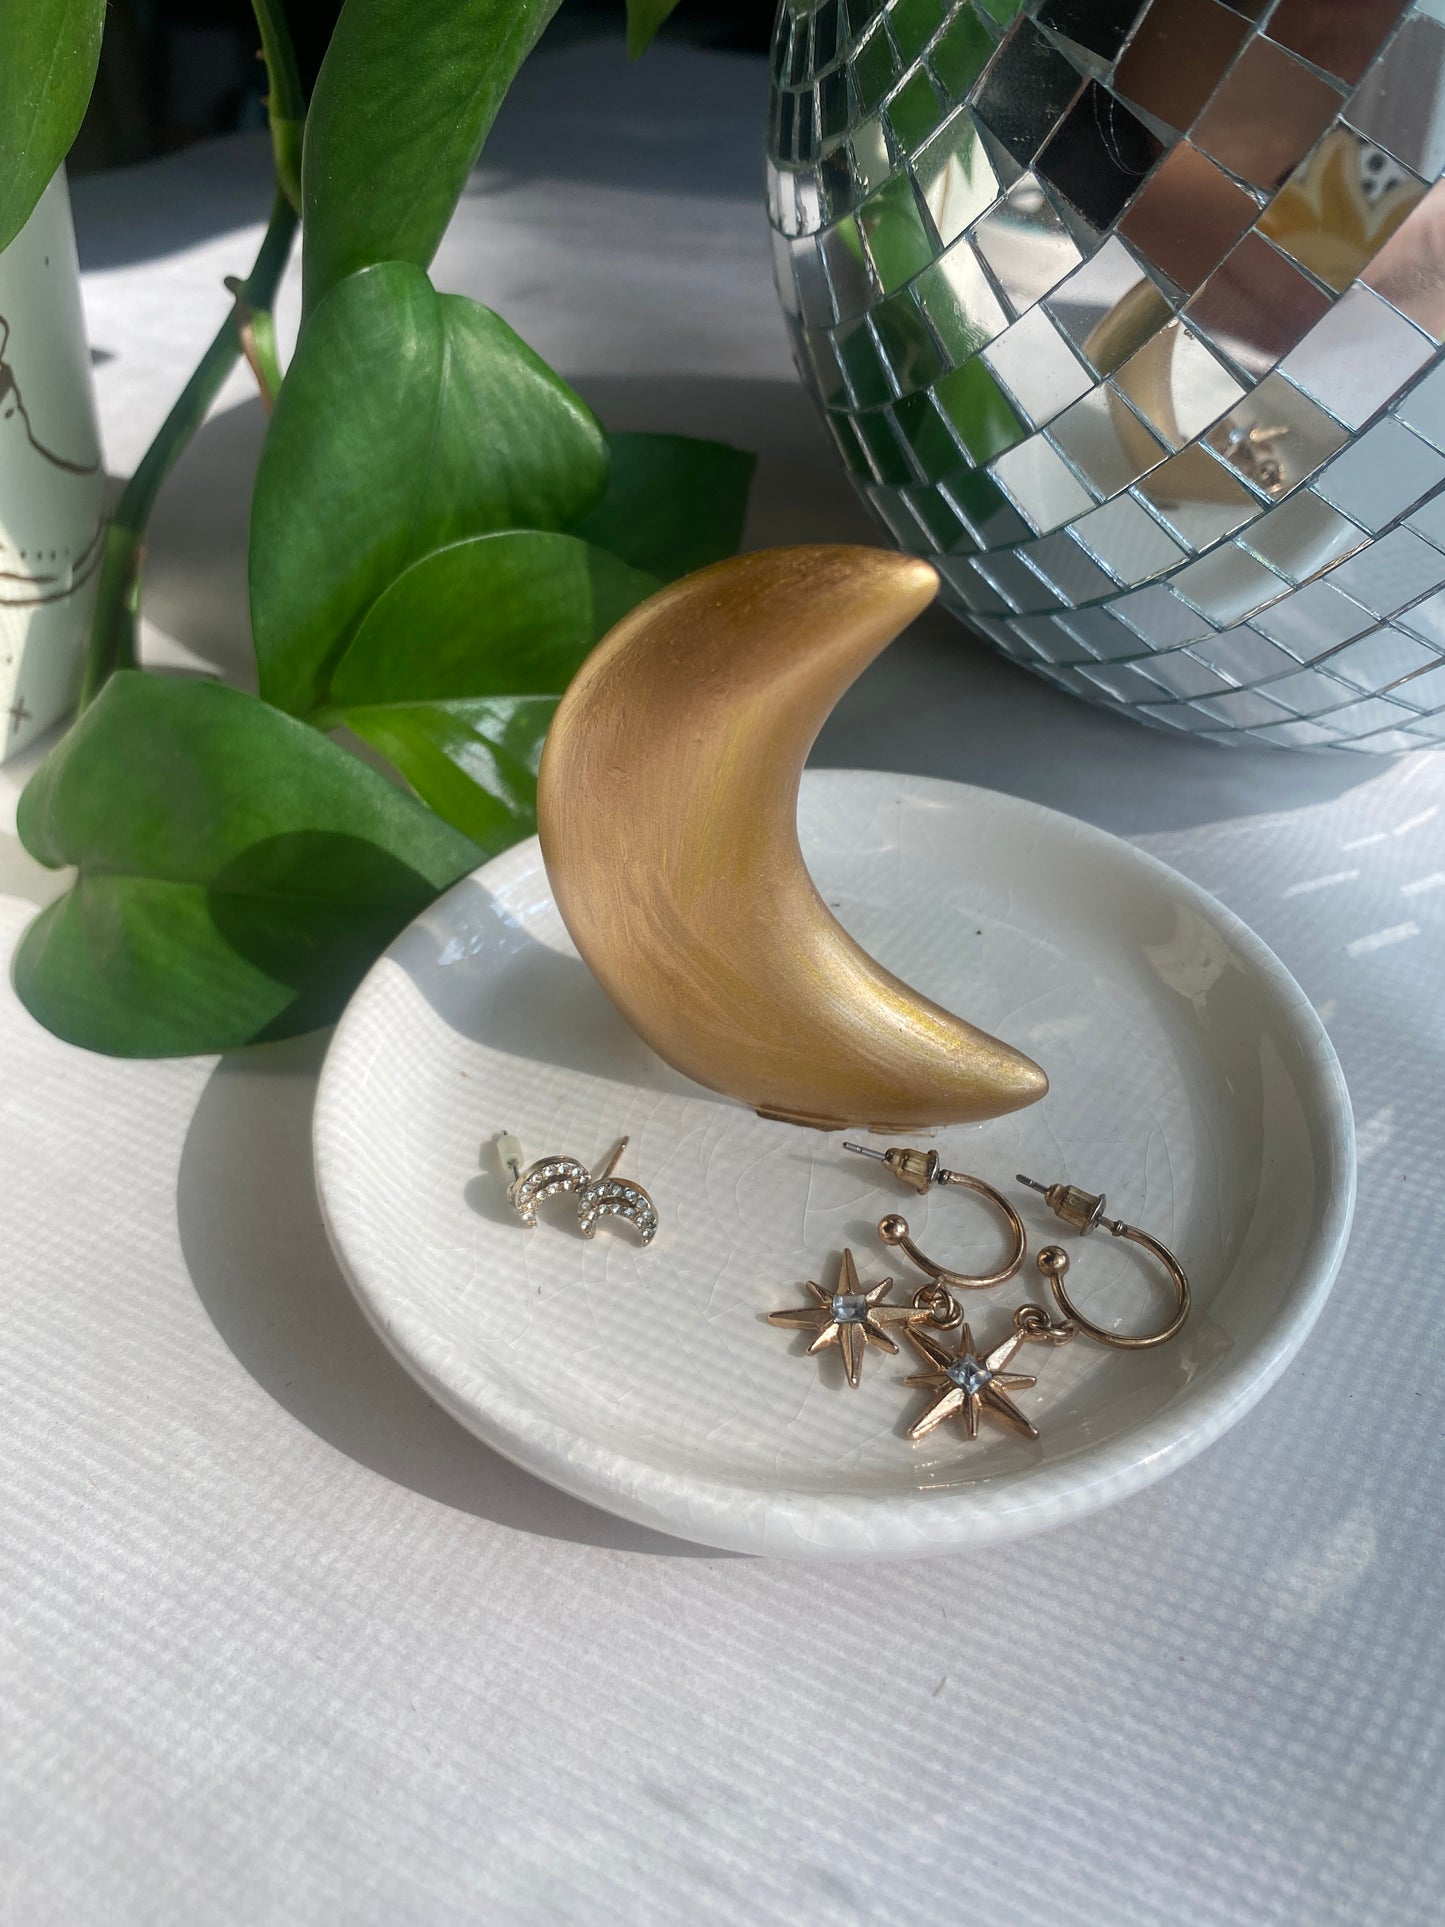 Crescent Moon Jewelry Tray | decorative trinket tray